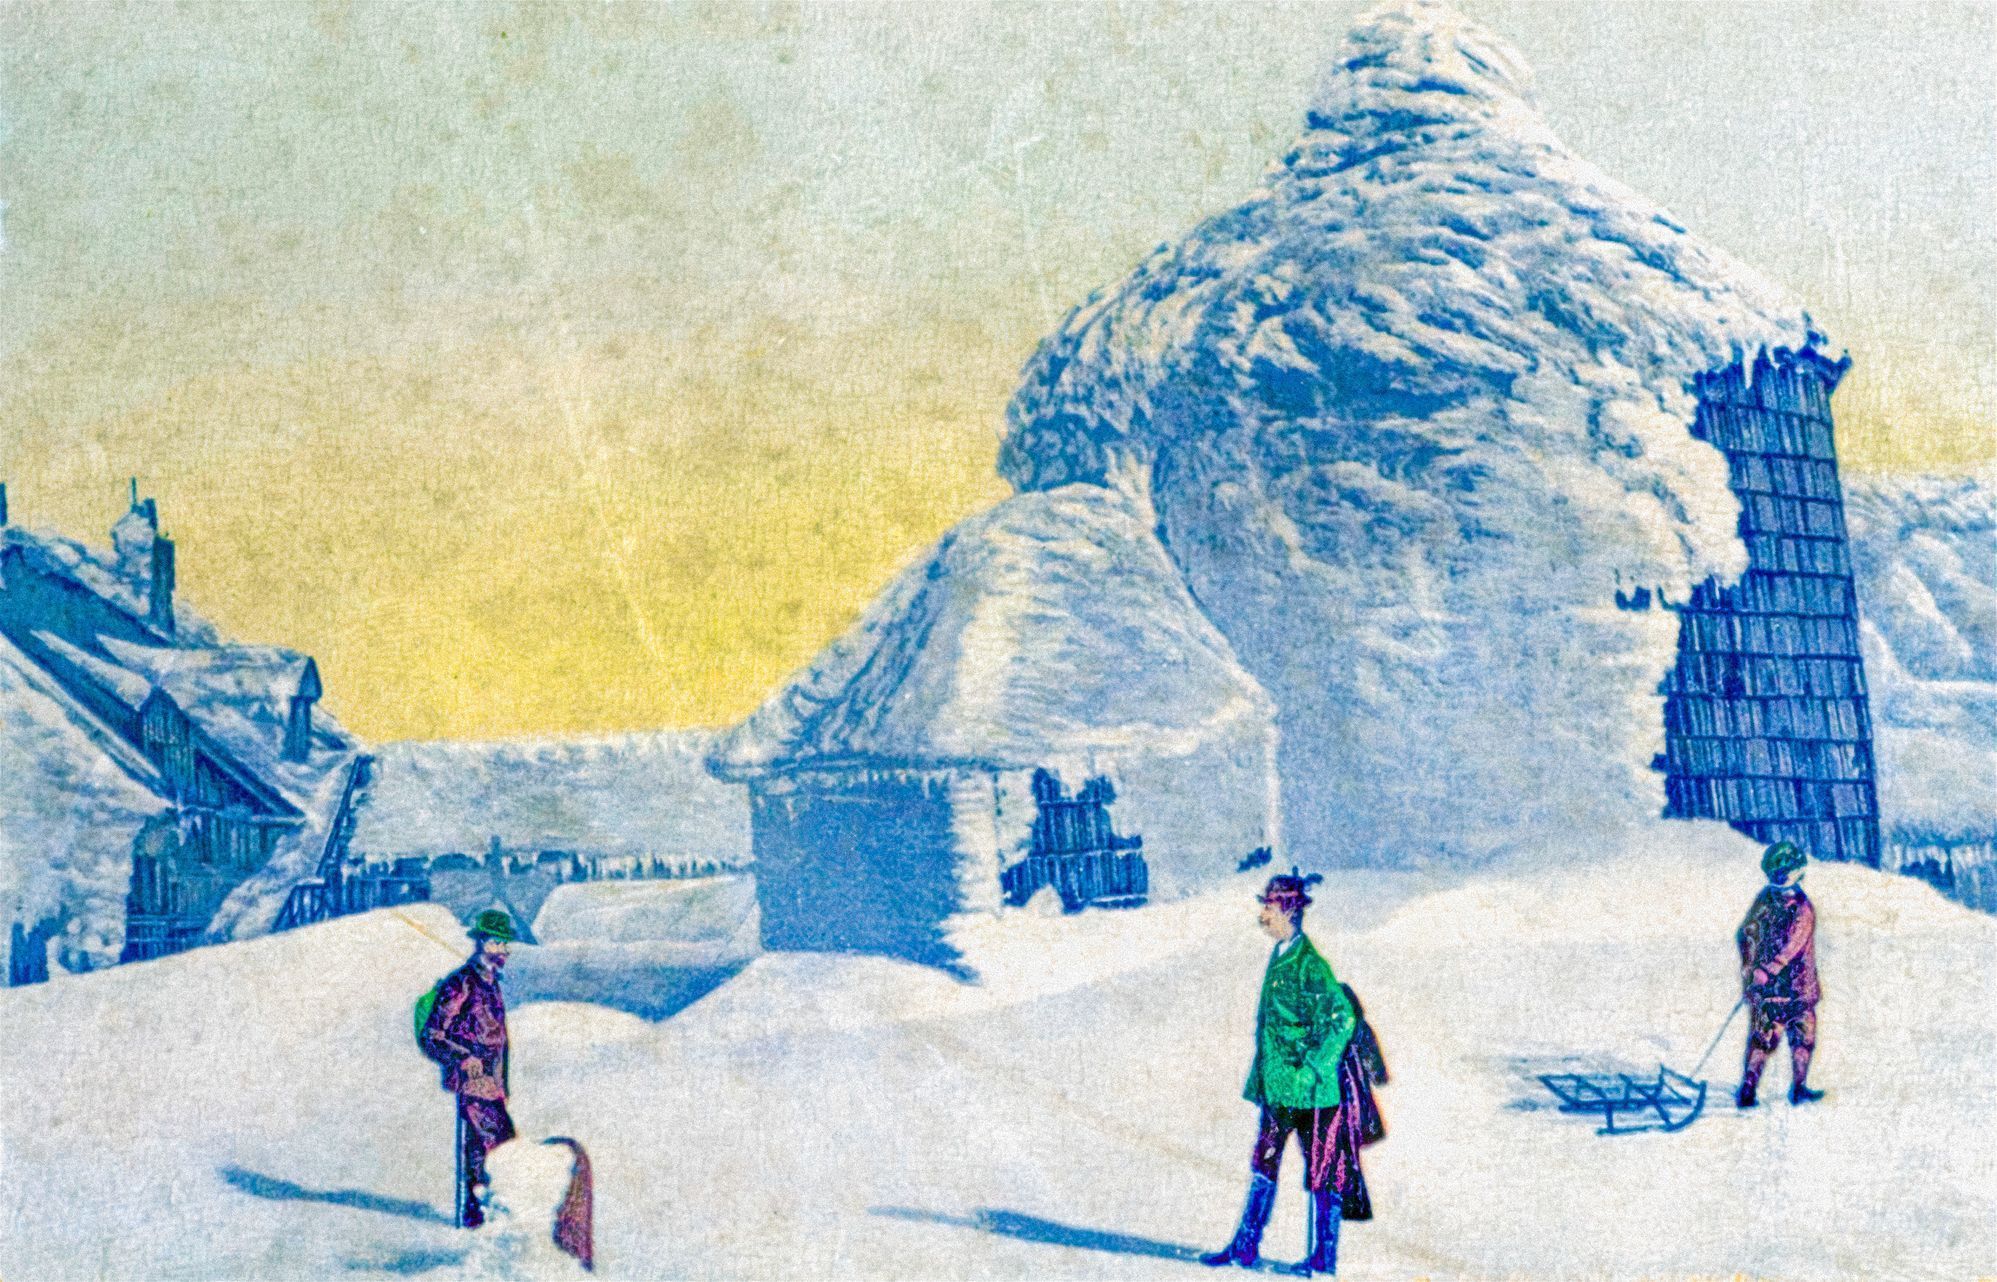 Lanová dráha Pec pod Sněžkou – Sněžka, lanovka, historie, výročí